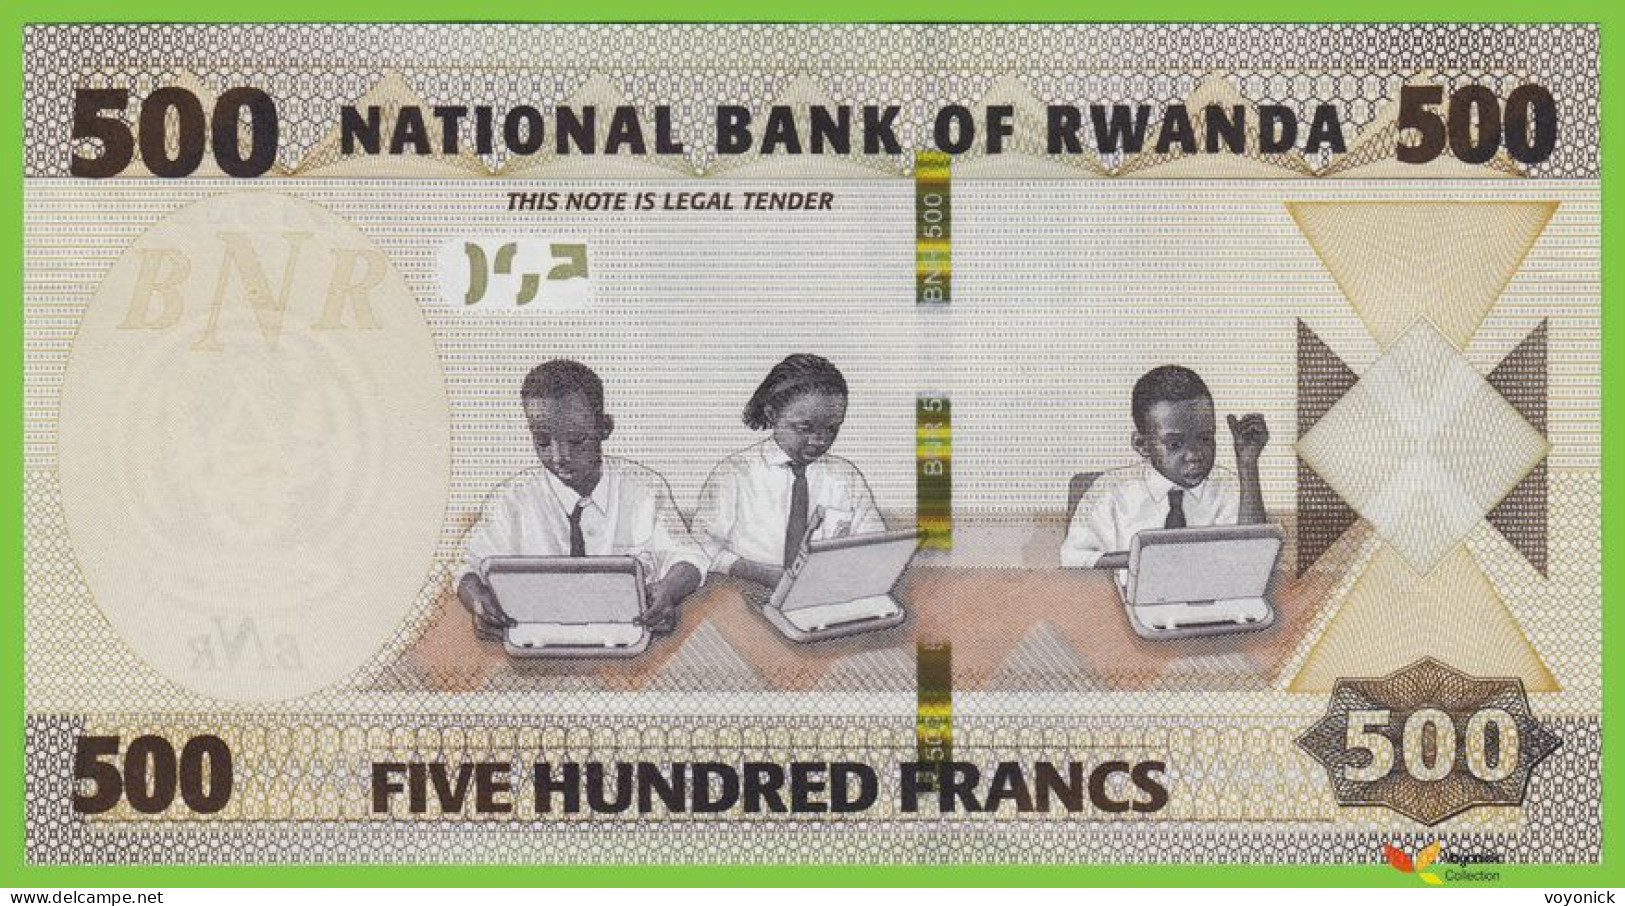 Voyo RWANDA 500 Francs 2019 P42 B141a BA UNC - Rwanda